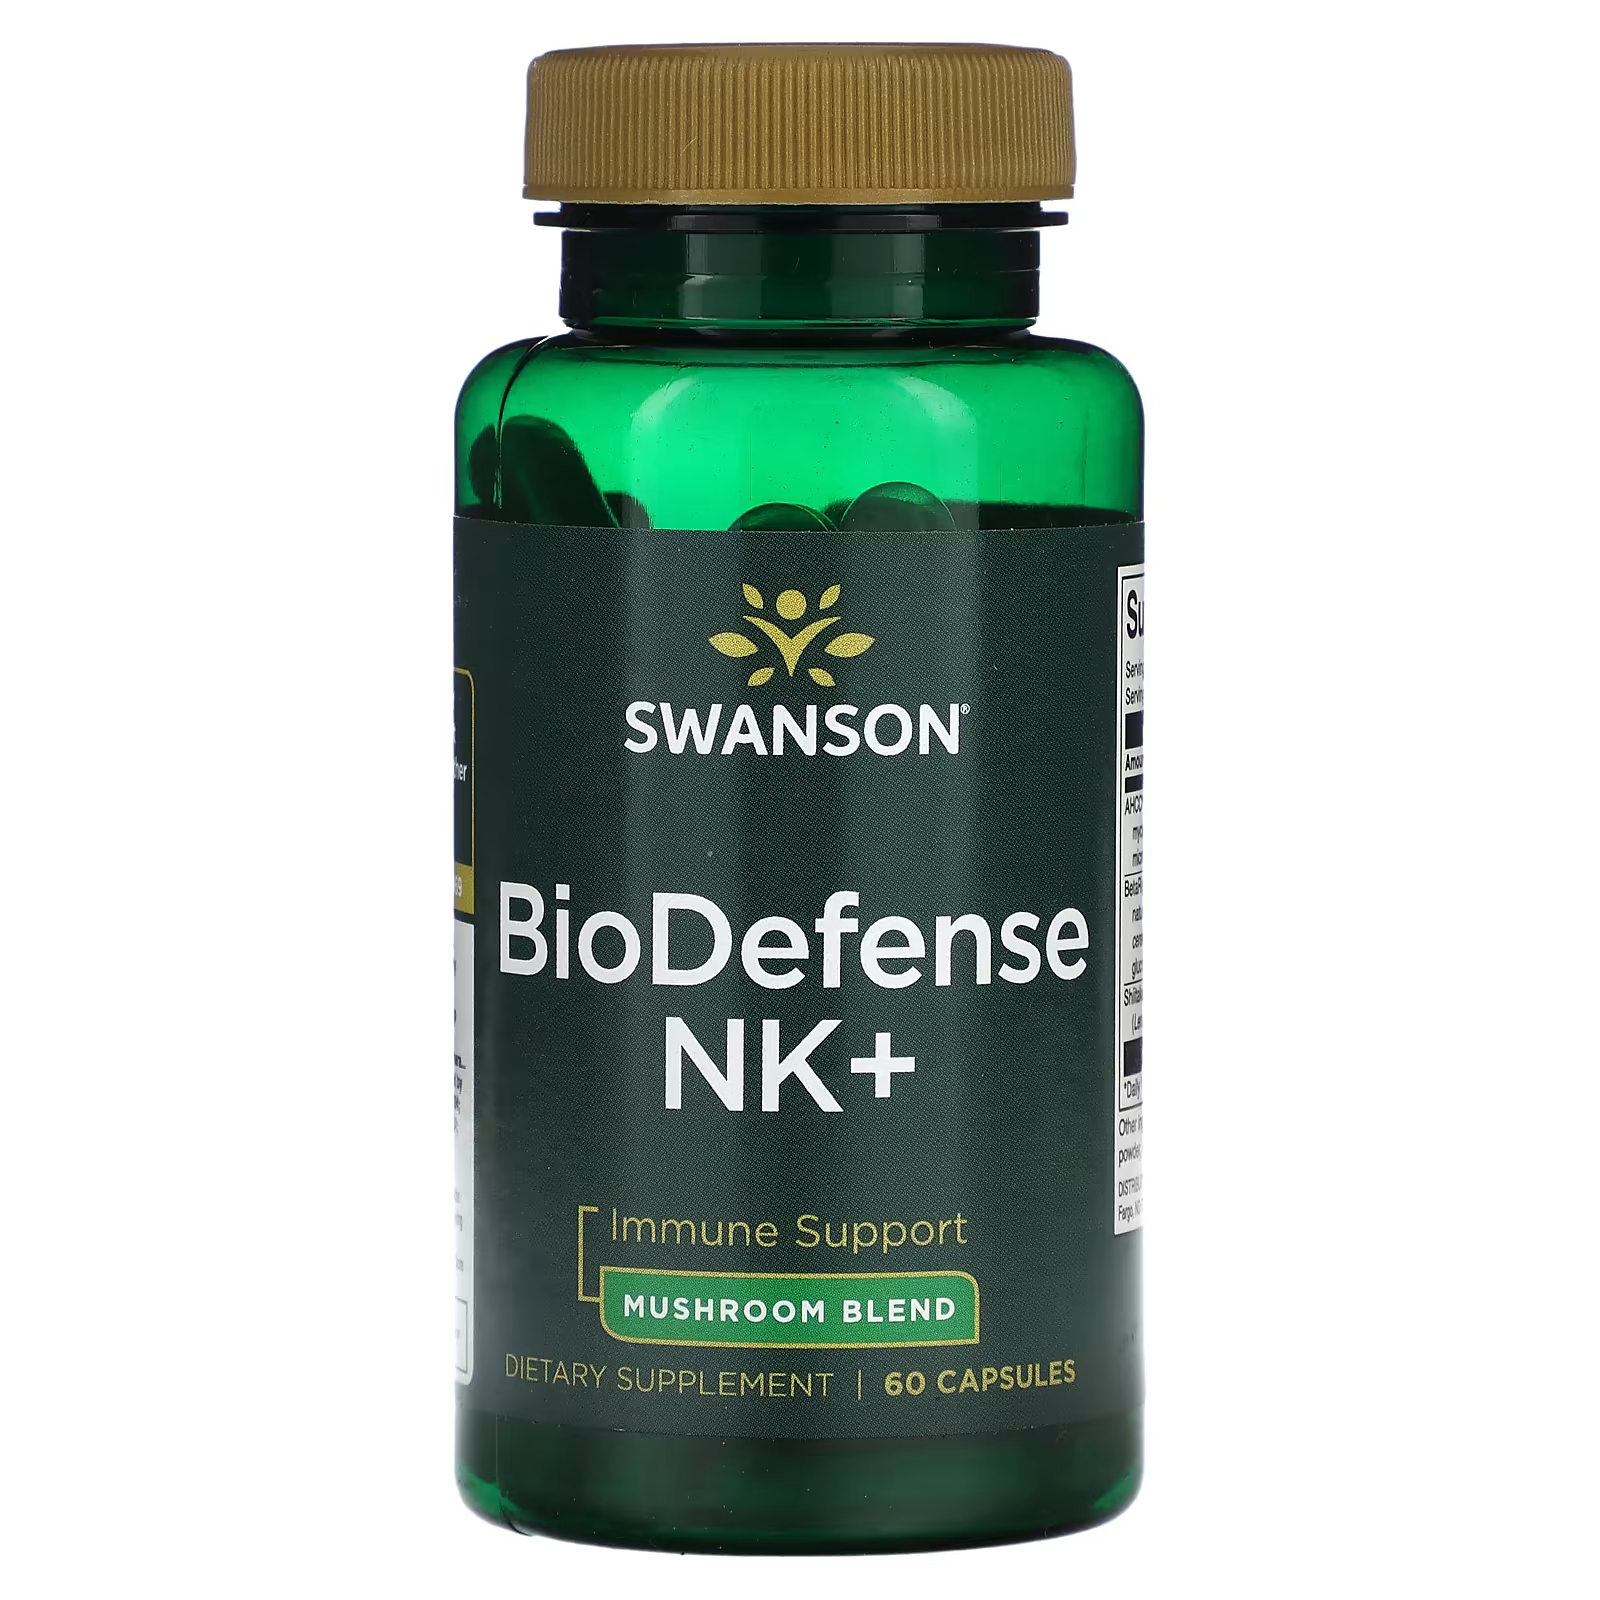 Пищевая добавка Swanson BioDefense NK+, 60 капсул пищевая добавка swanson кератин 60 капсул